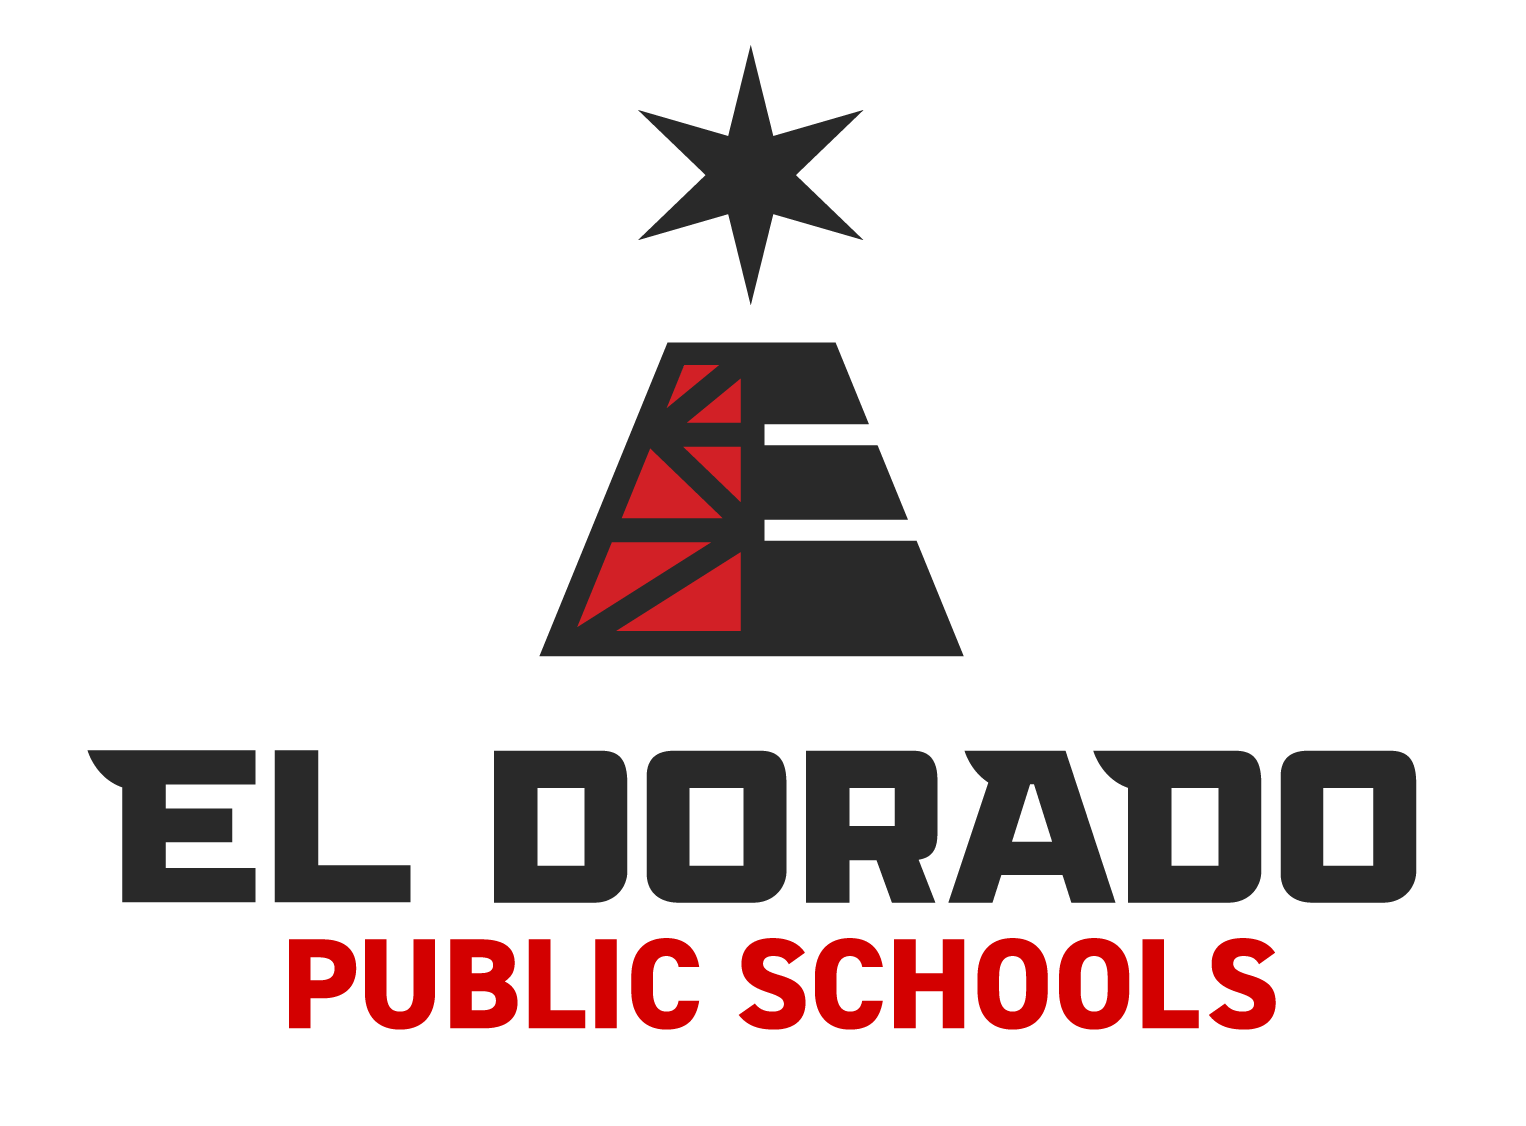 District Logo